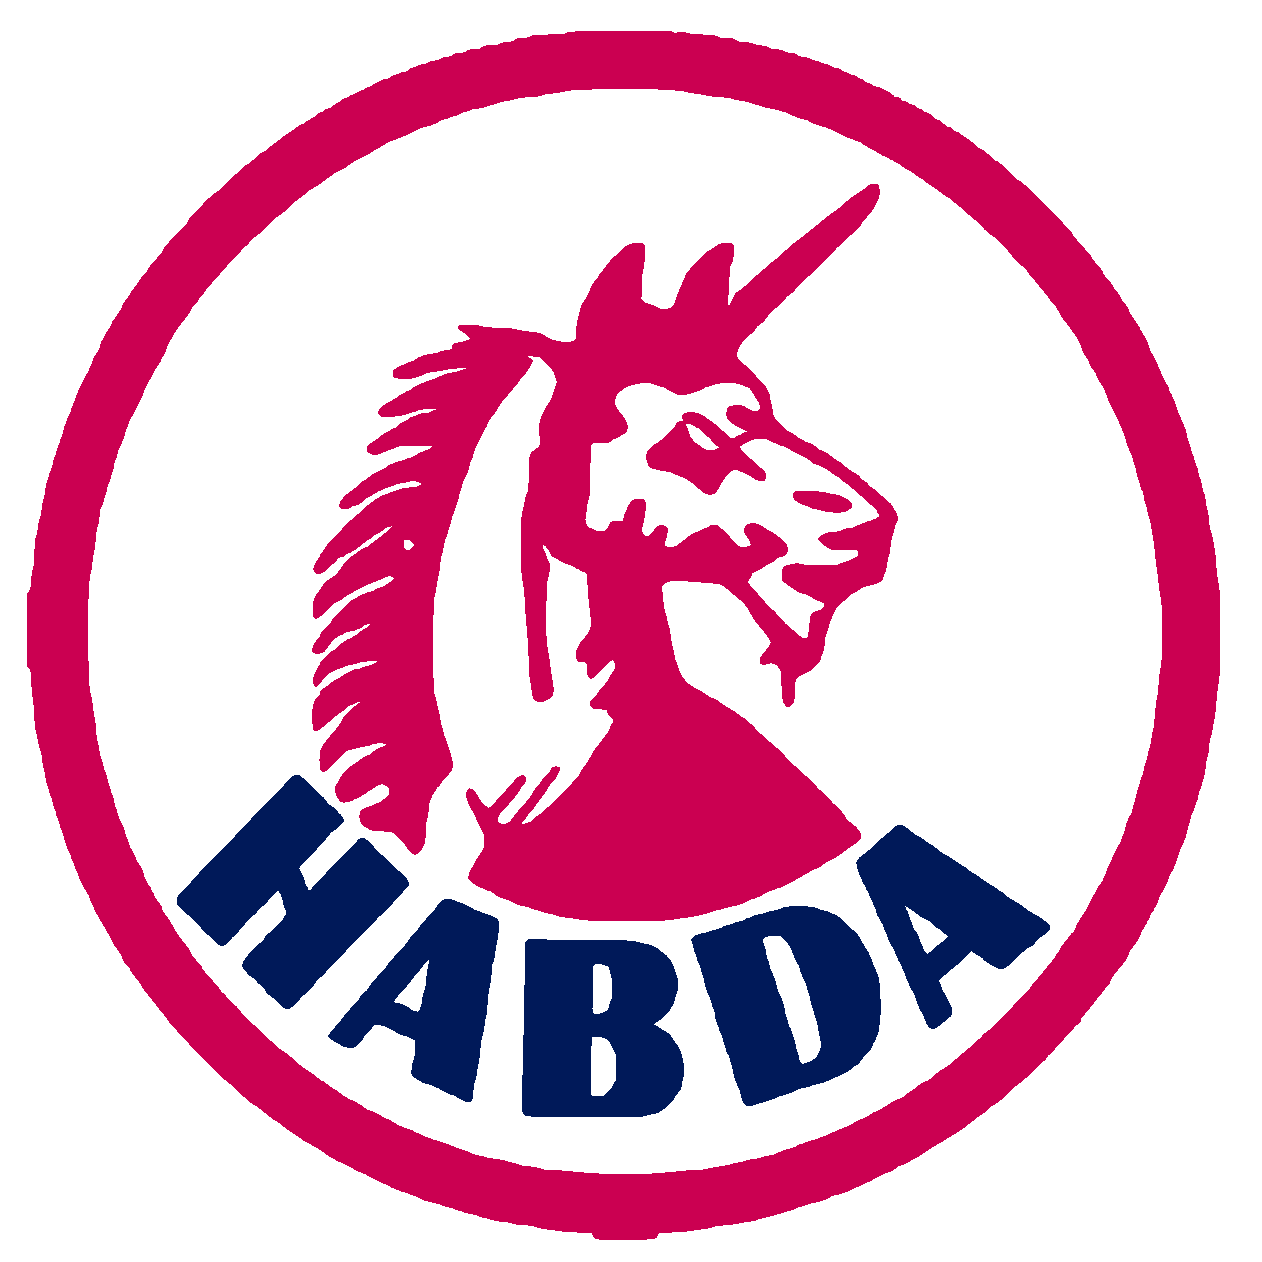 Habda ry seuran logo